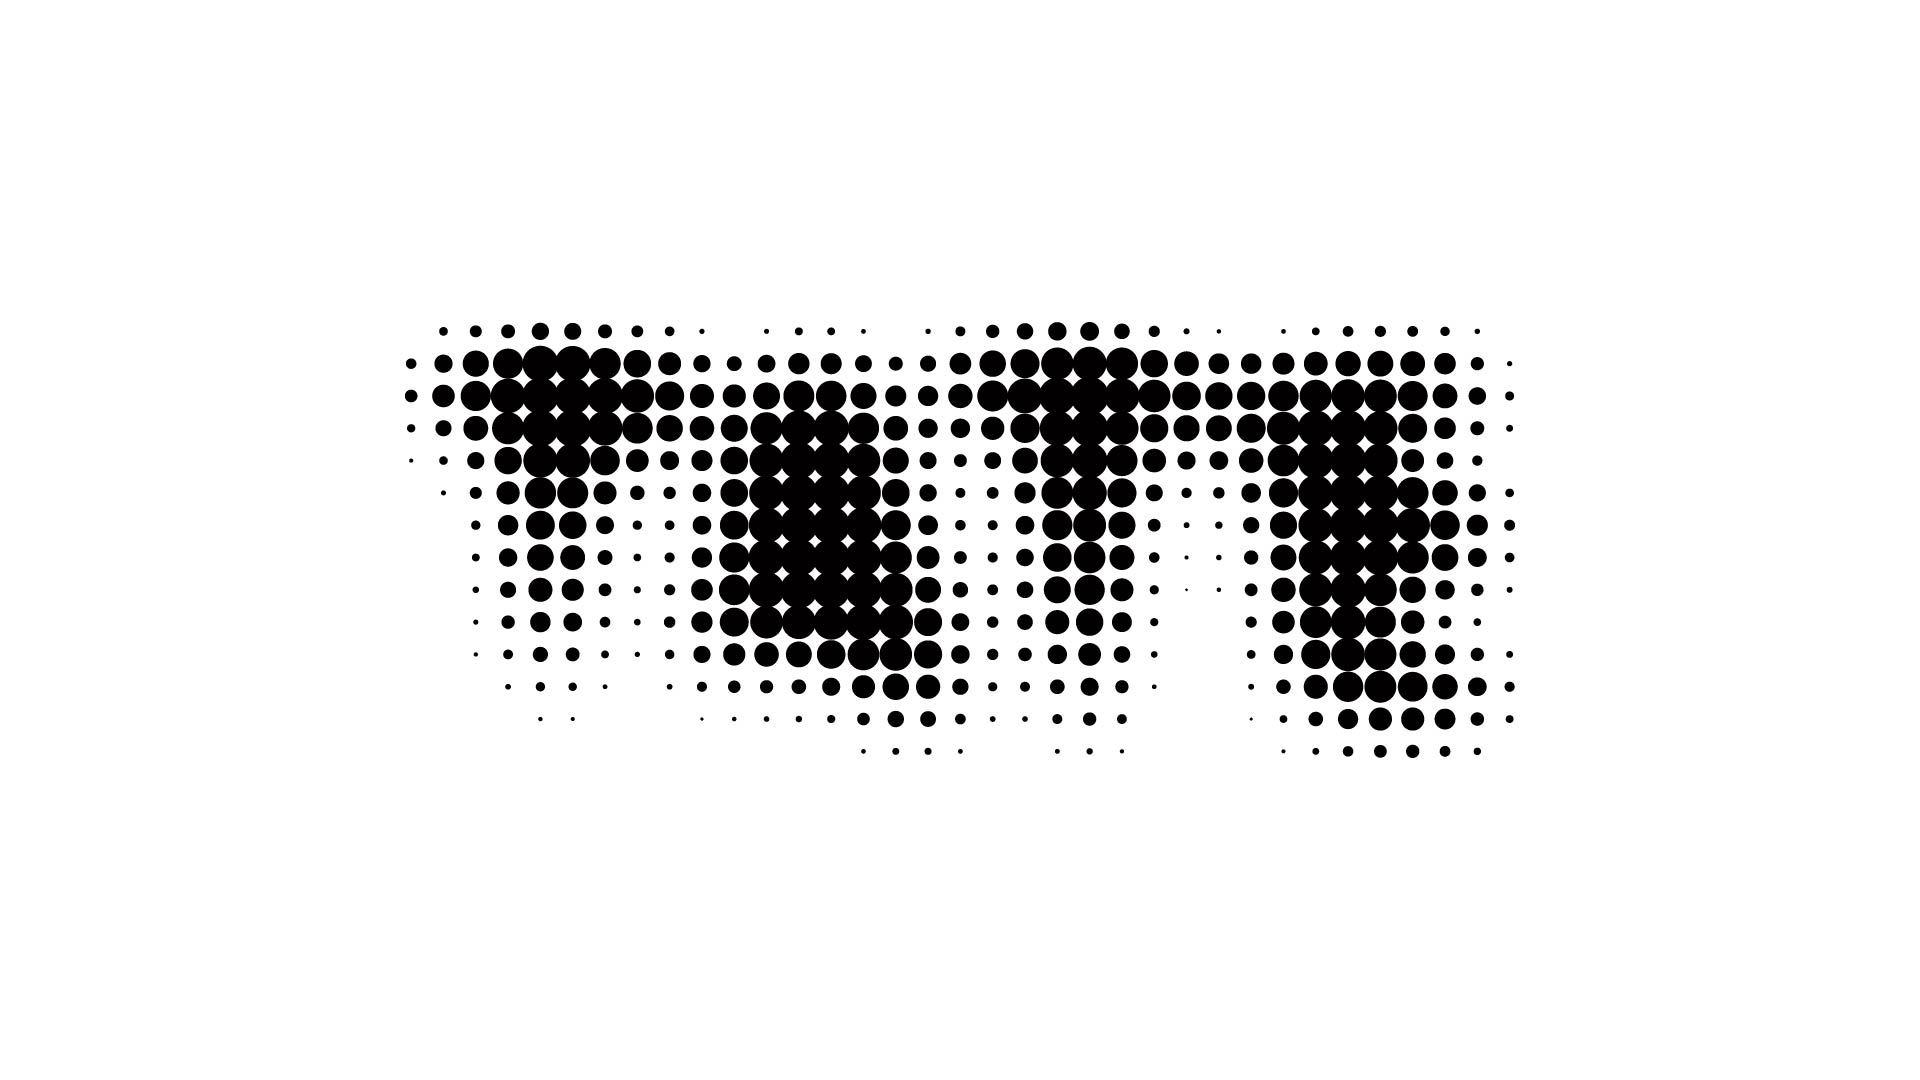 Logo Tate